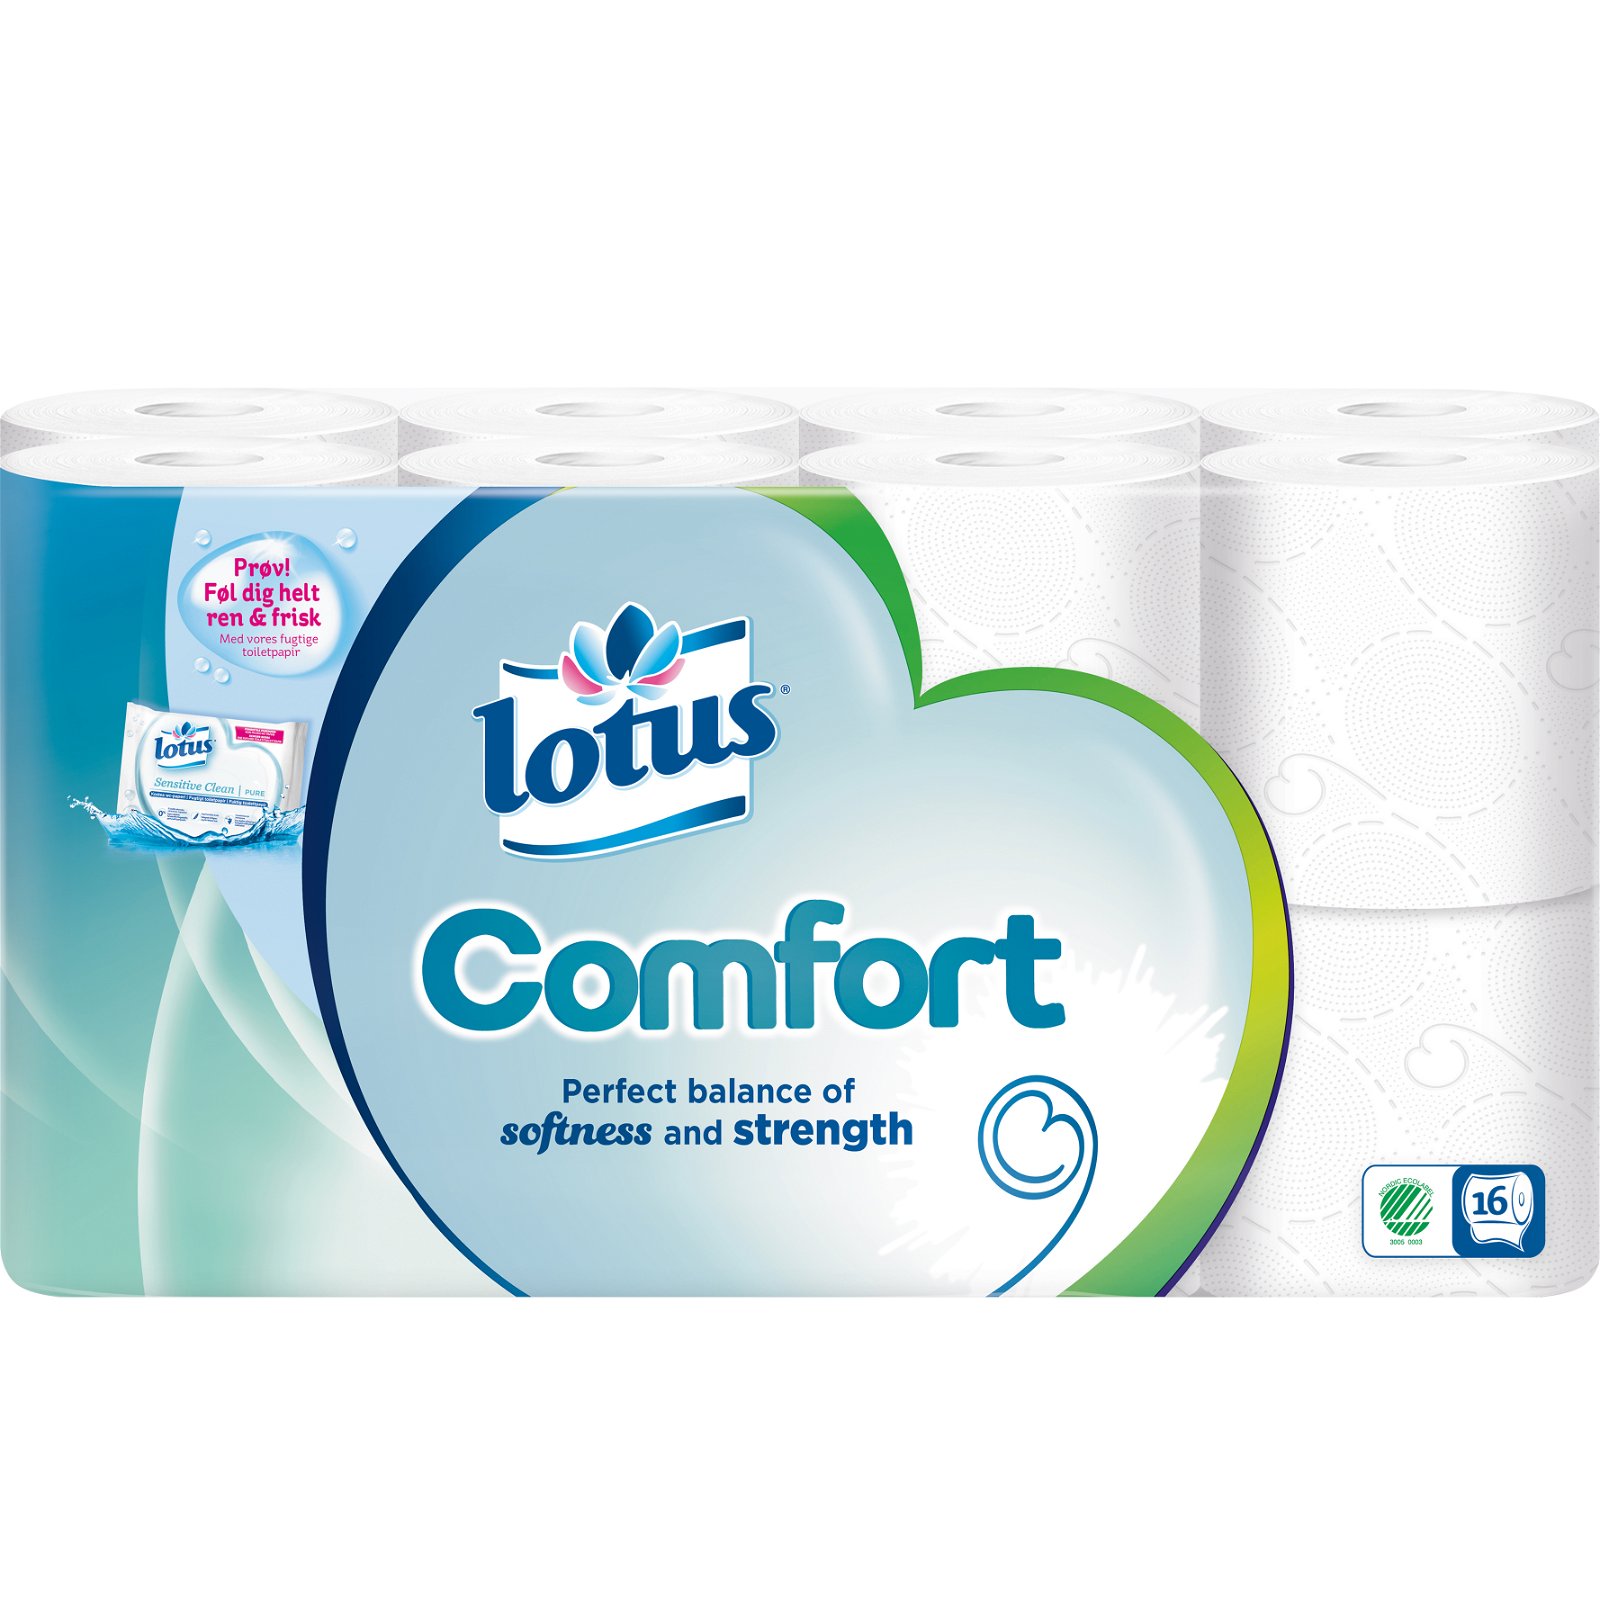 Lotus Royal toiletpapir